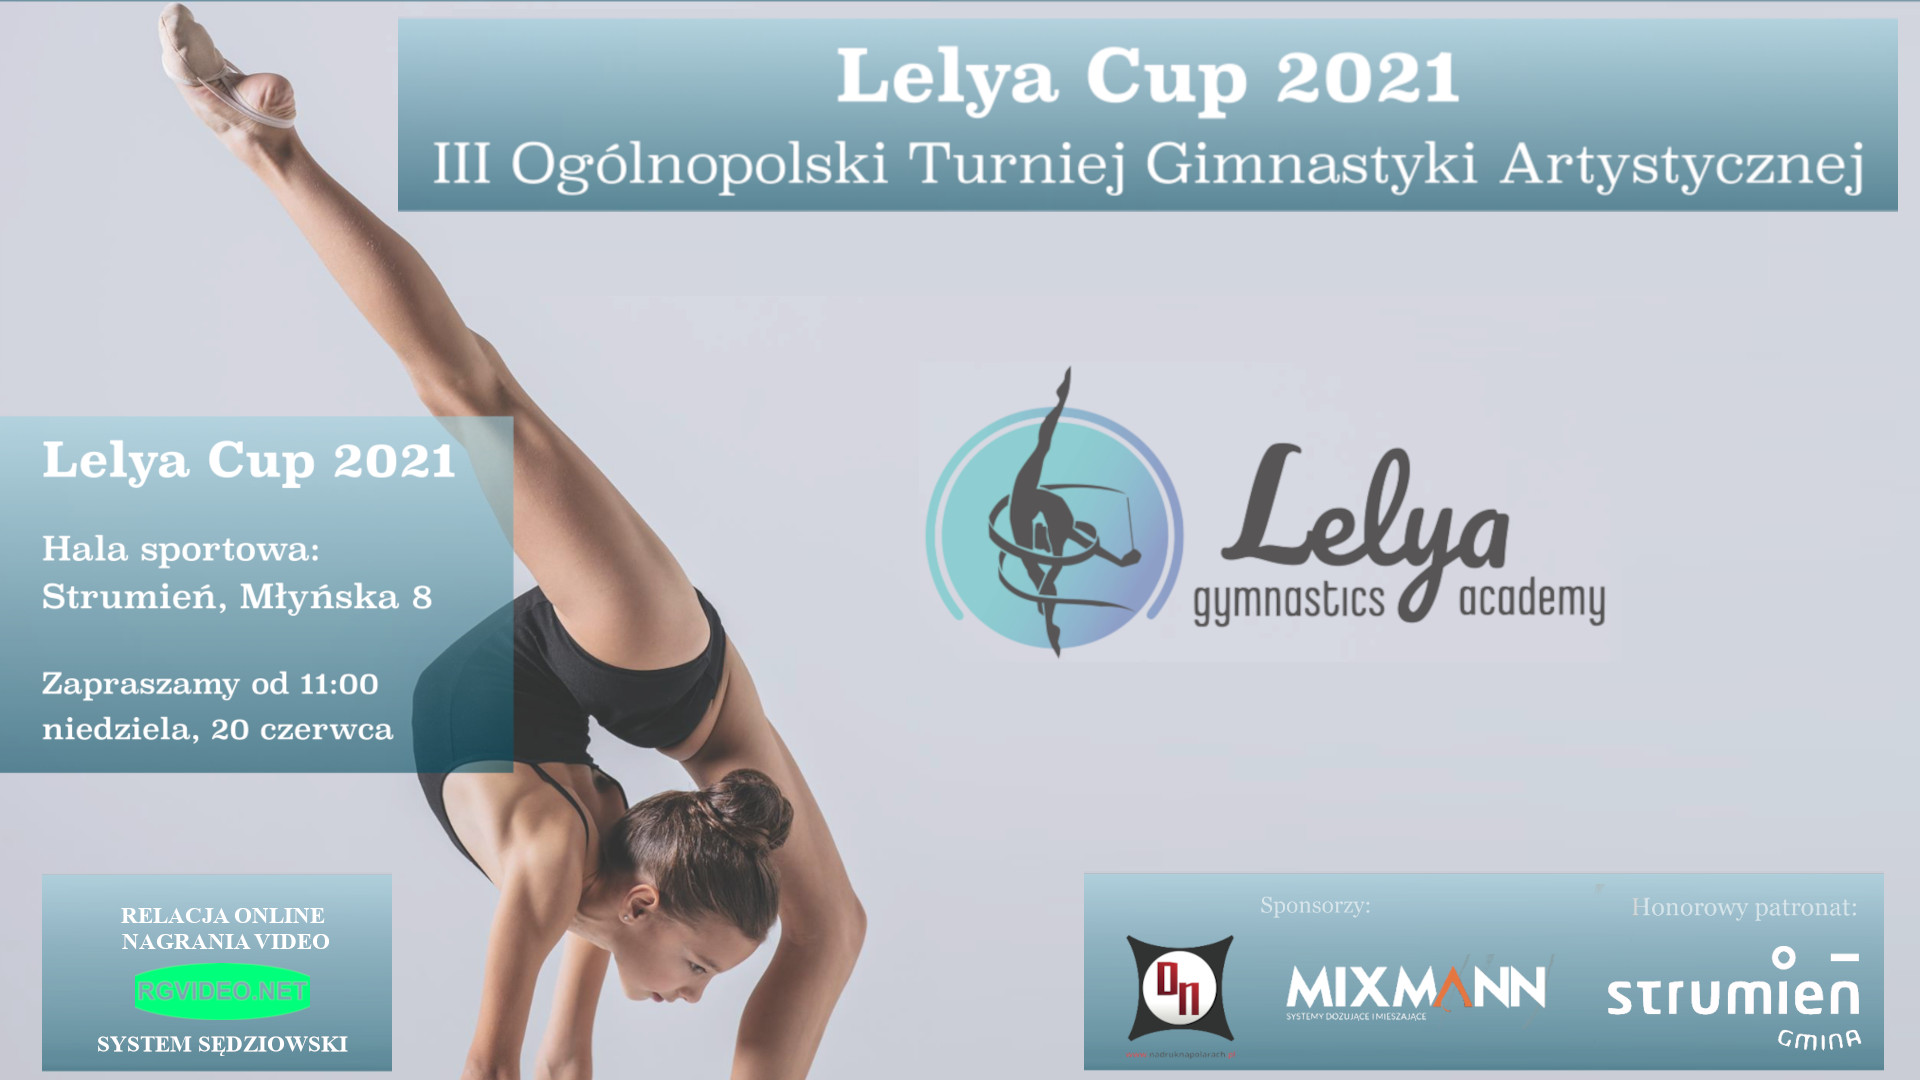 LELYA CUP 2021